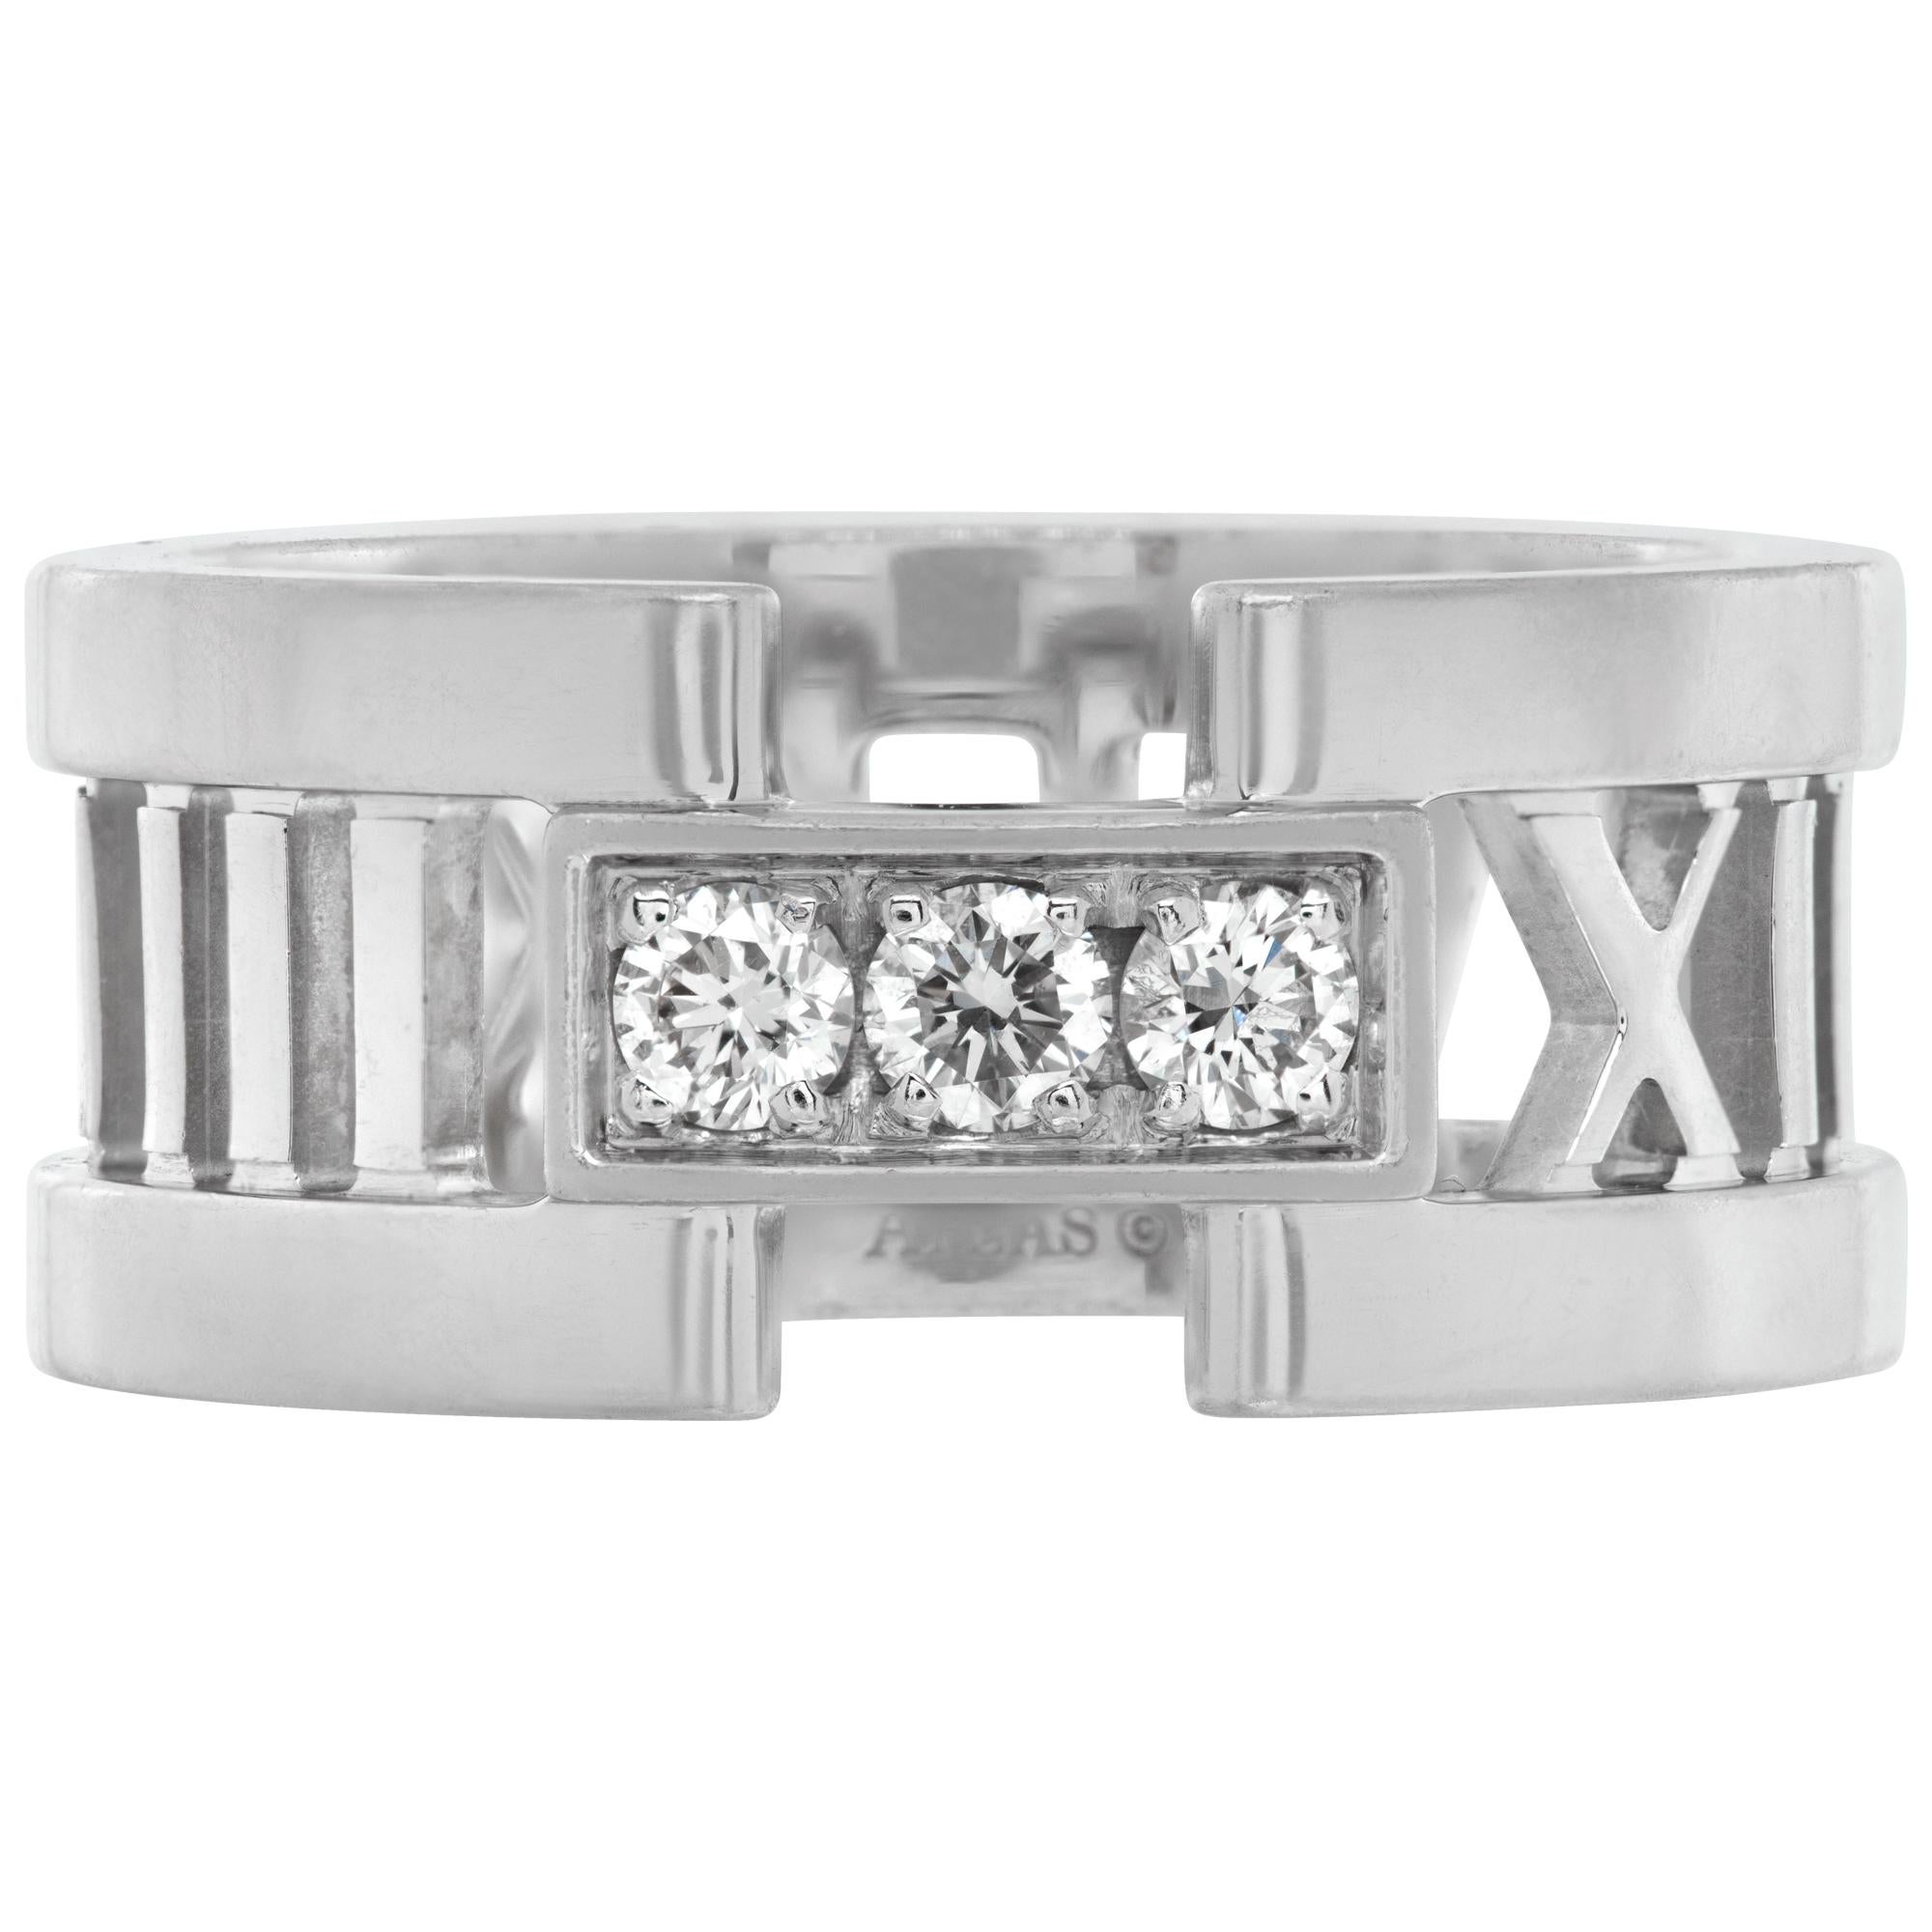 Tiffany & Co. Bague Atlas 3 diamants en or blanc 18k avec 0,19 carats de diamants ronds de taille brillant de couleur E-F et de pureté VVS-VS. Taille 5.5.Cette bague Tiffany & Co. est actuellement de taille 5.5 et certains articles peuvent être